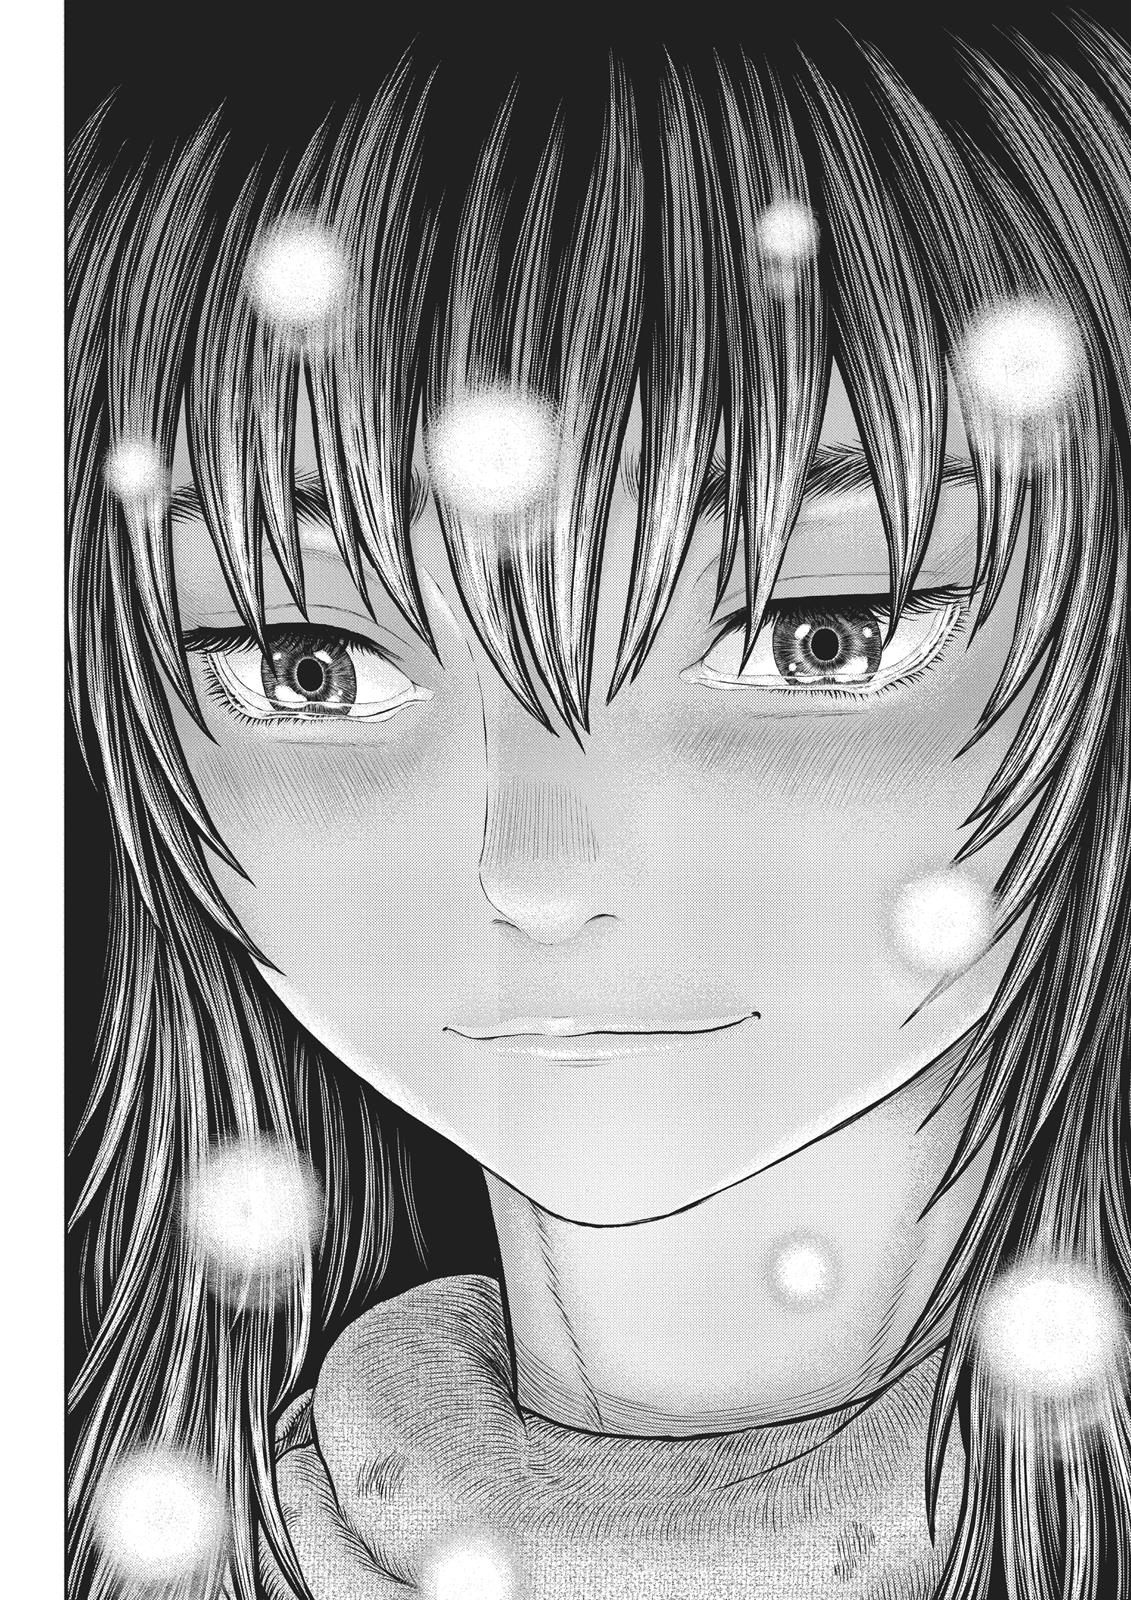 Berserk Manga Chapter 355 image 08